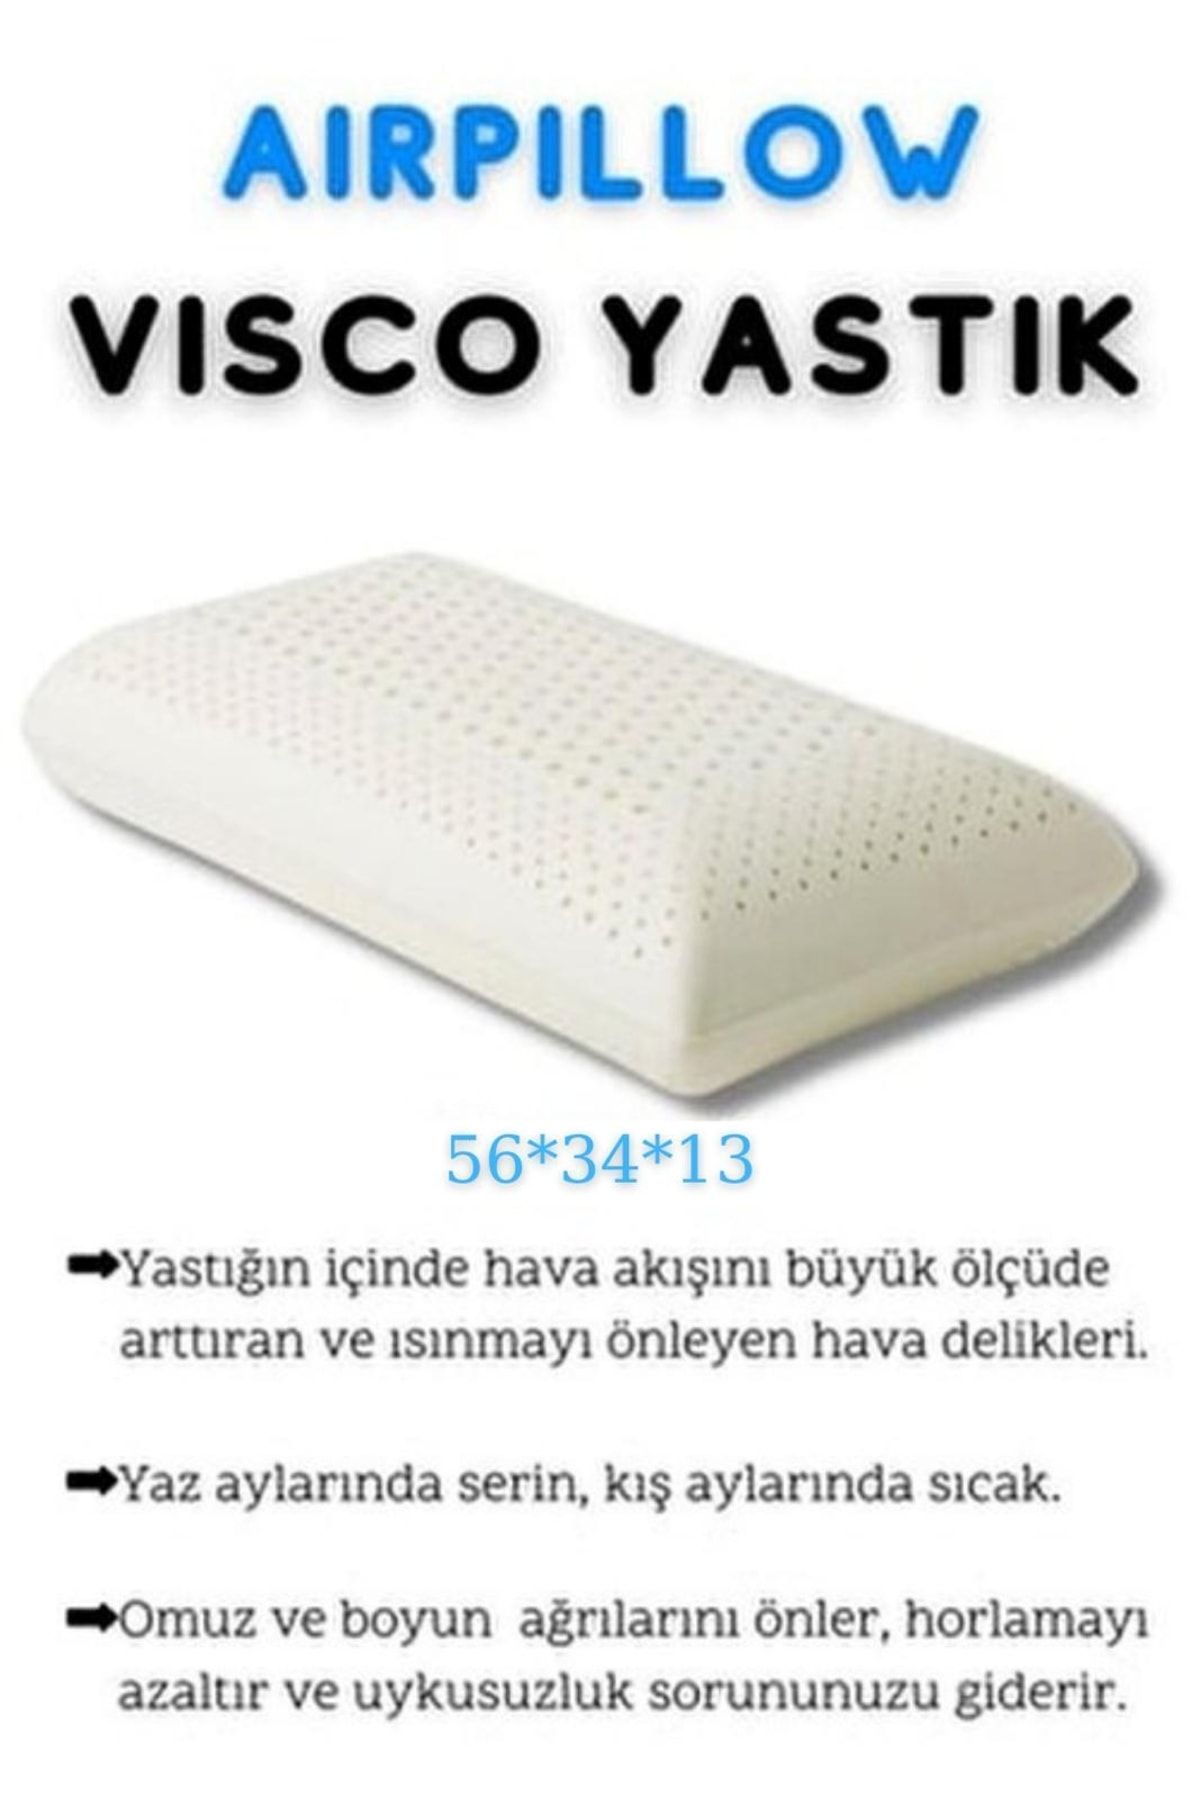 Ankaflex Visco Ortopedik Hava Kanallı Yastık Air Pillow Yumuşak Yastık 56x34x13cm Alçak Yükseklikte Yastık